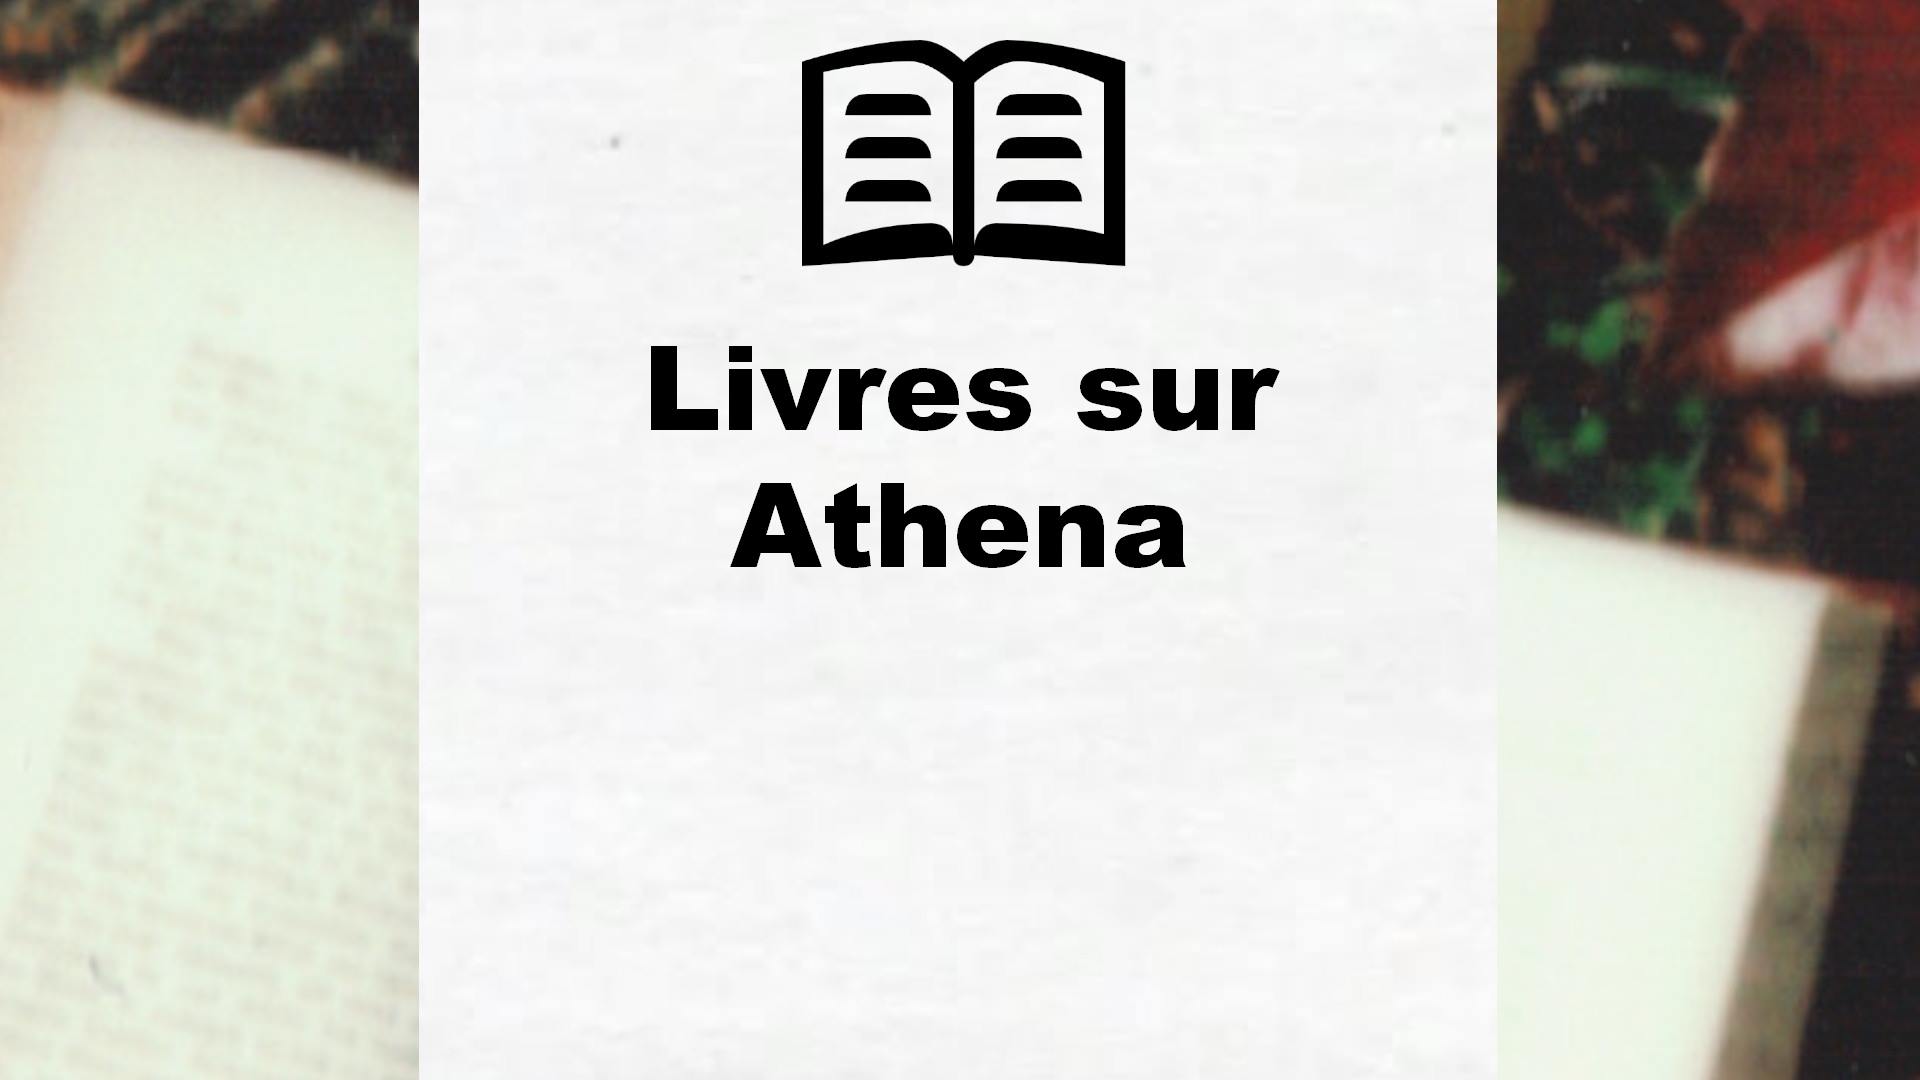 Livres sur Athena